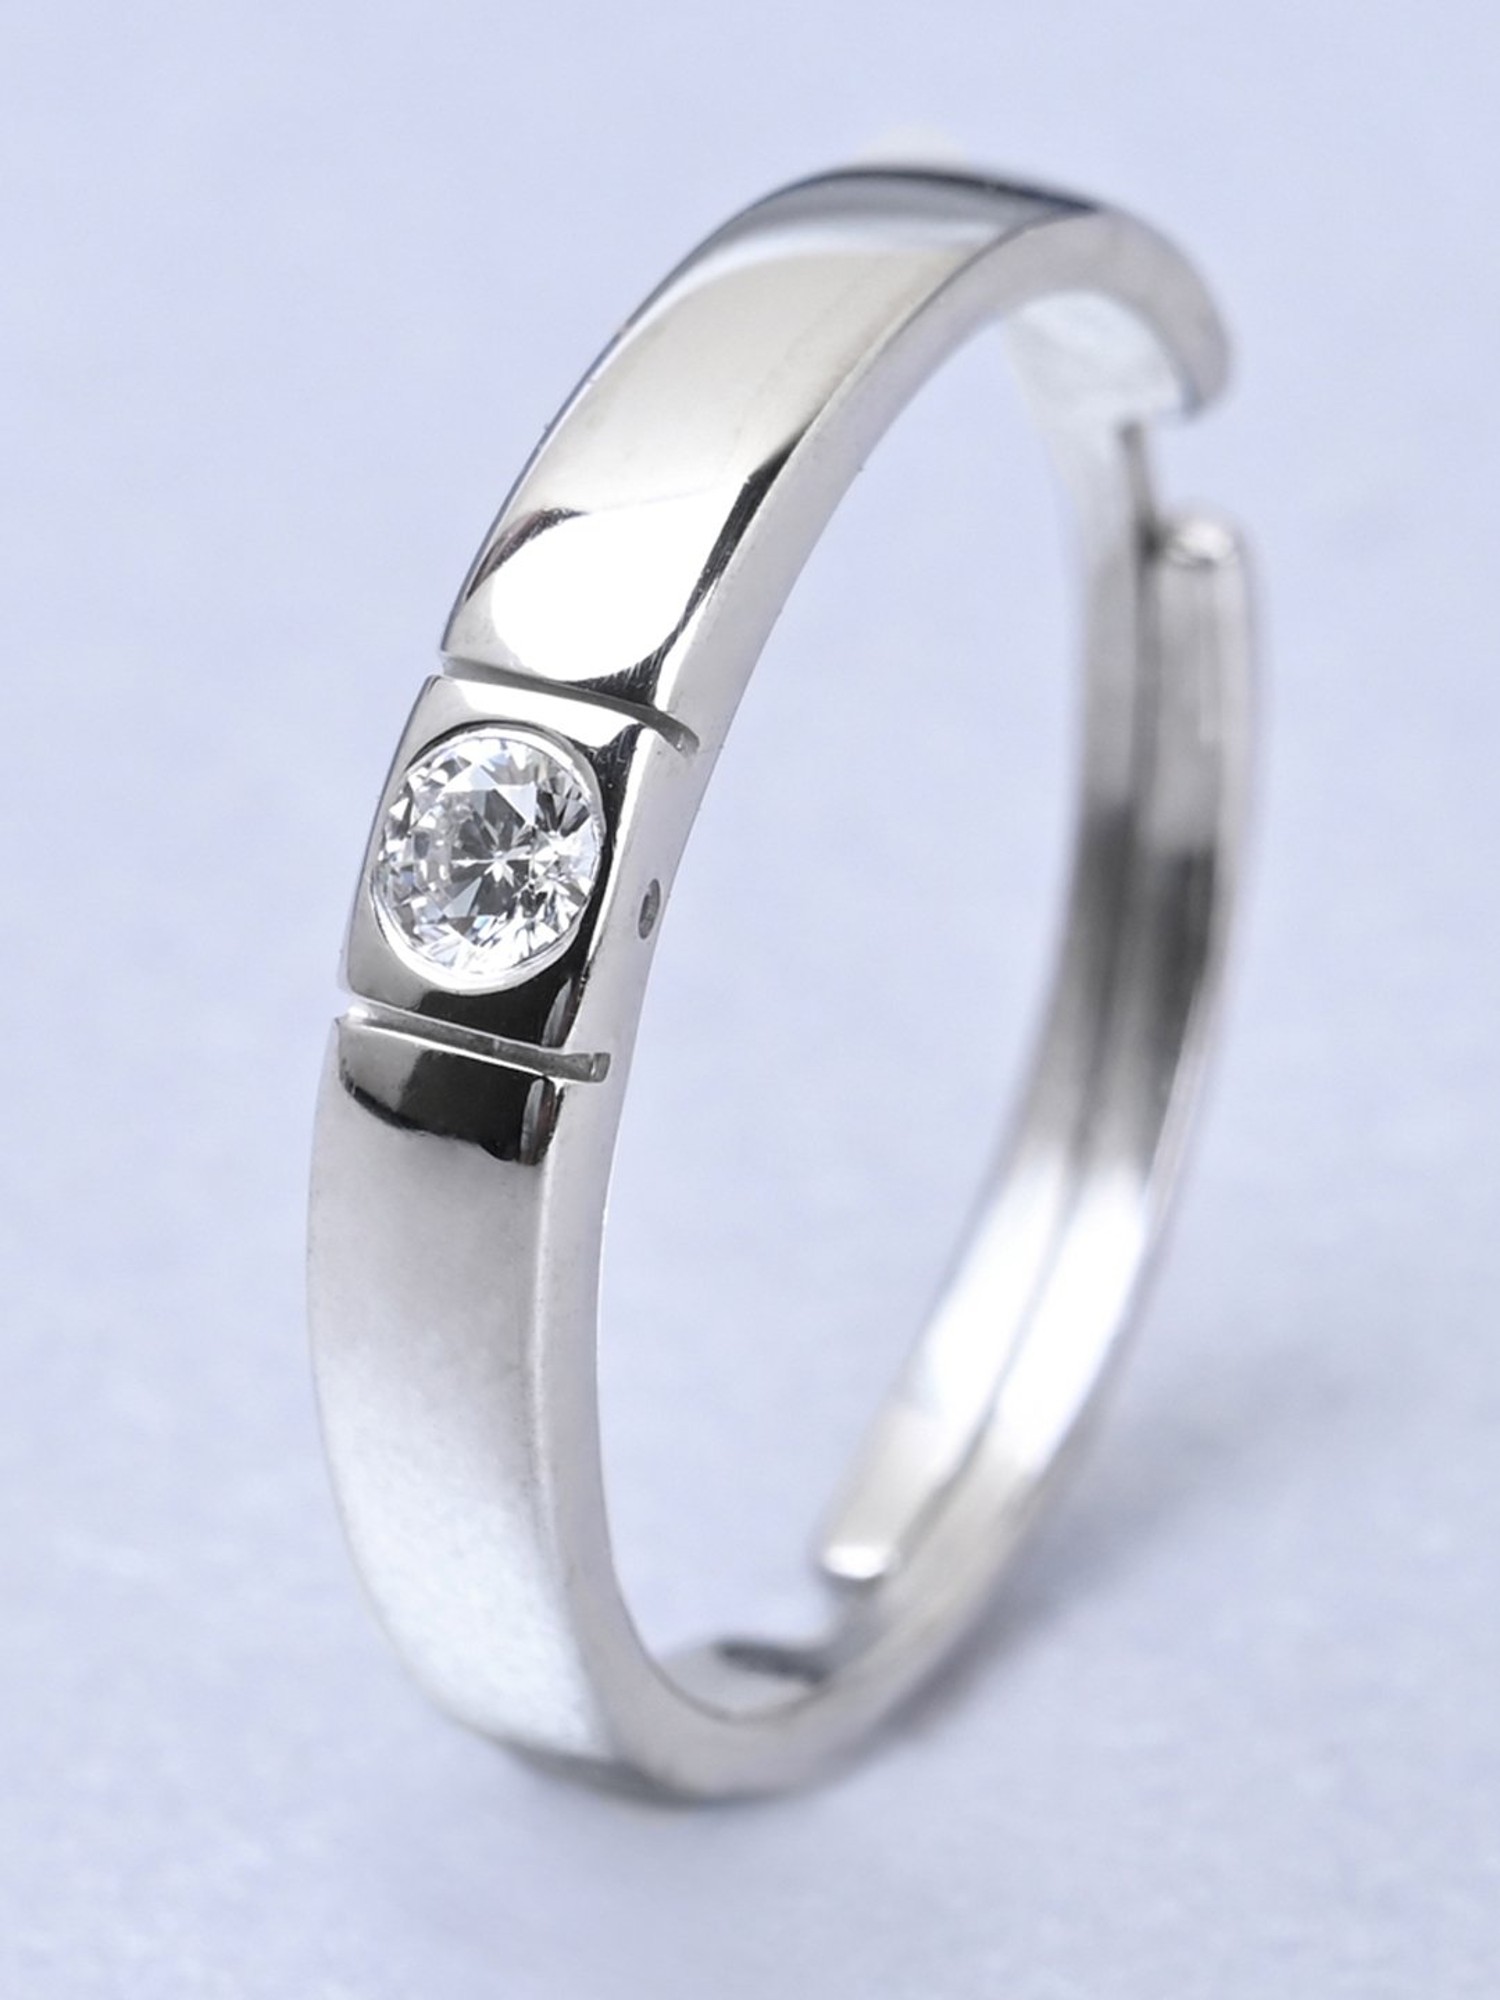 Buy Diamond Ring Sterling Silver for Men Women online-saigonsouth.com.vn